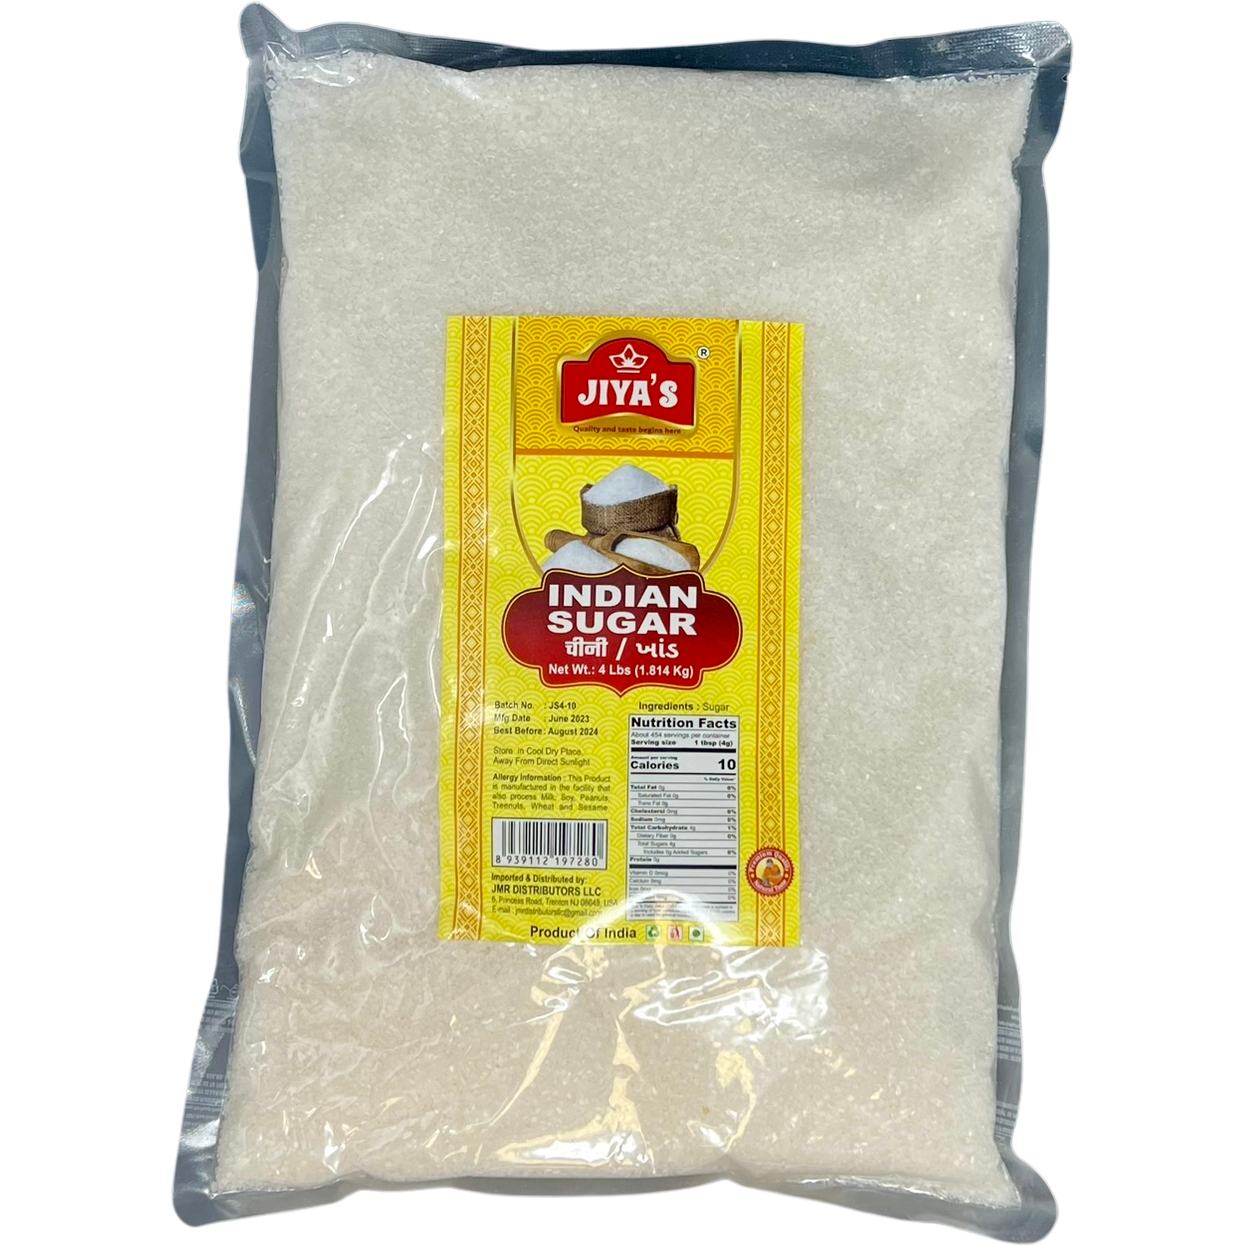 Case of 10 - Jiya's Indian Sugar - 4 Lb (1.82 Kg)